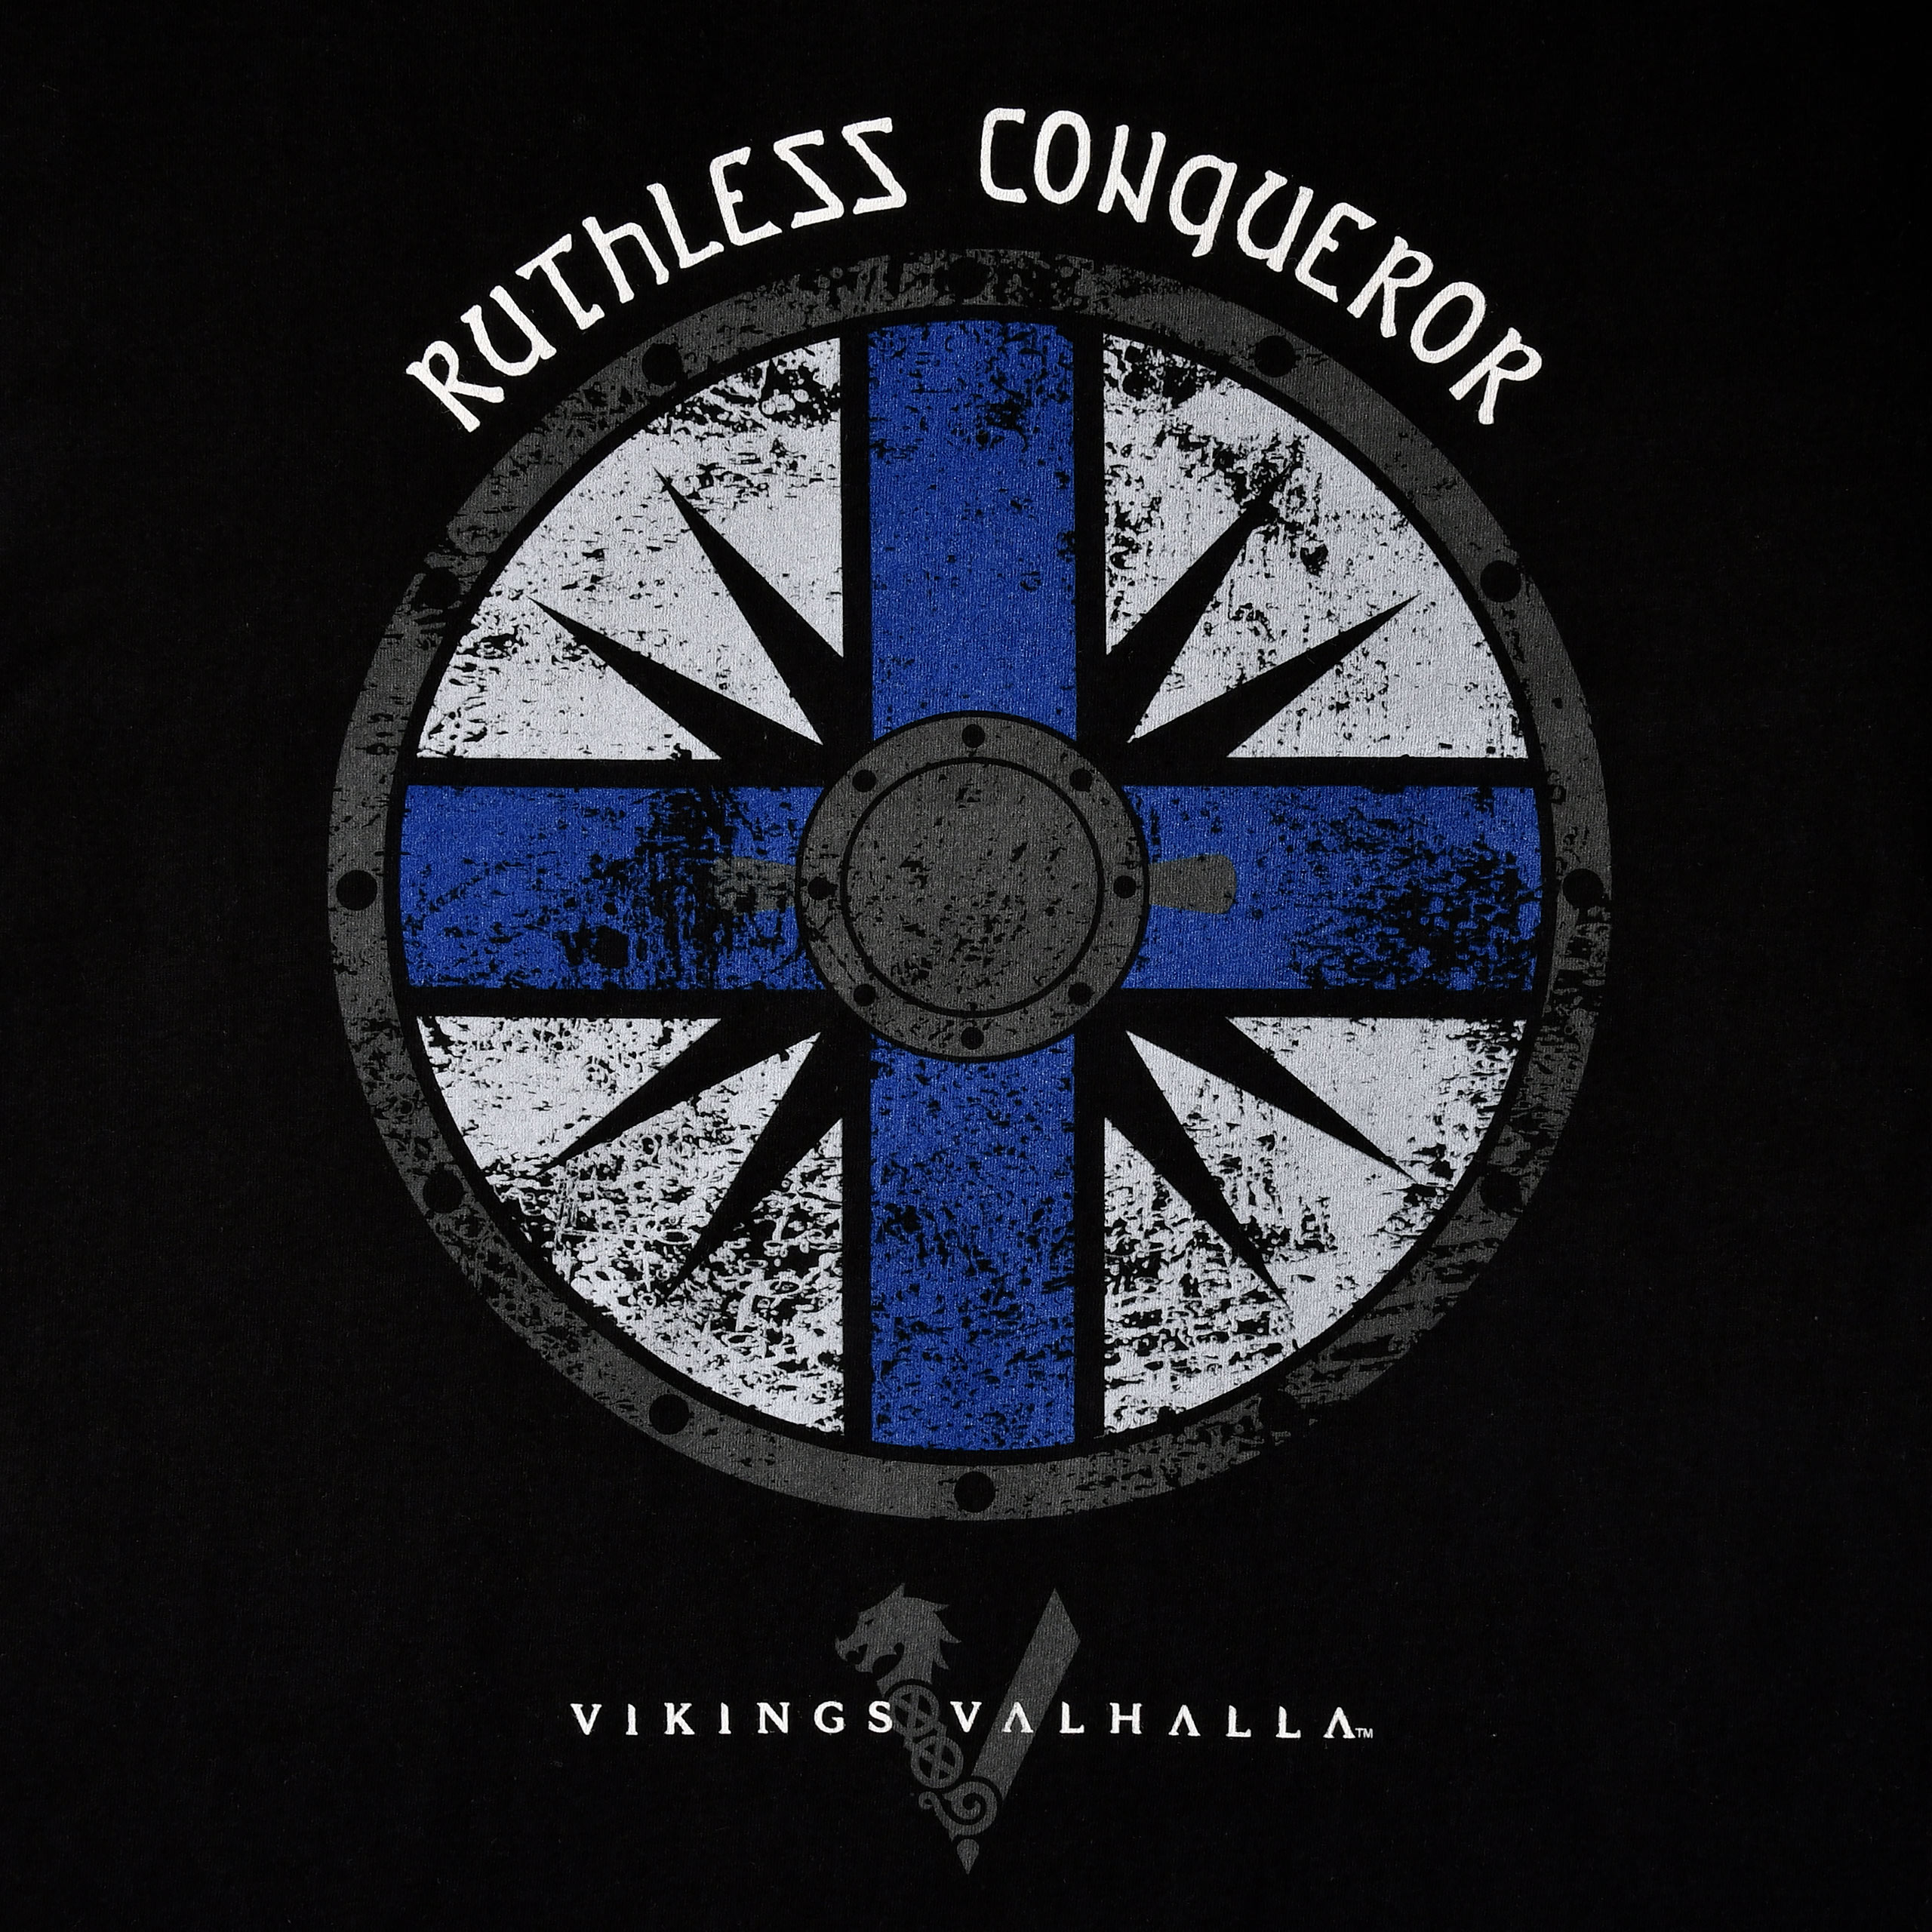 Vikings Valhalla - Ruthless Conqueror T-Shirt schwarz